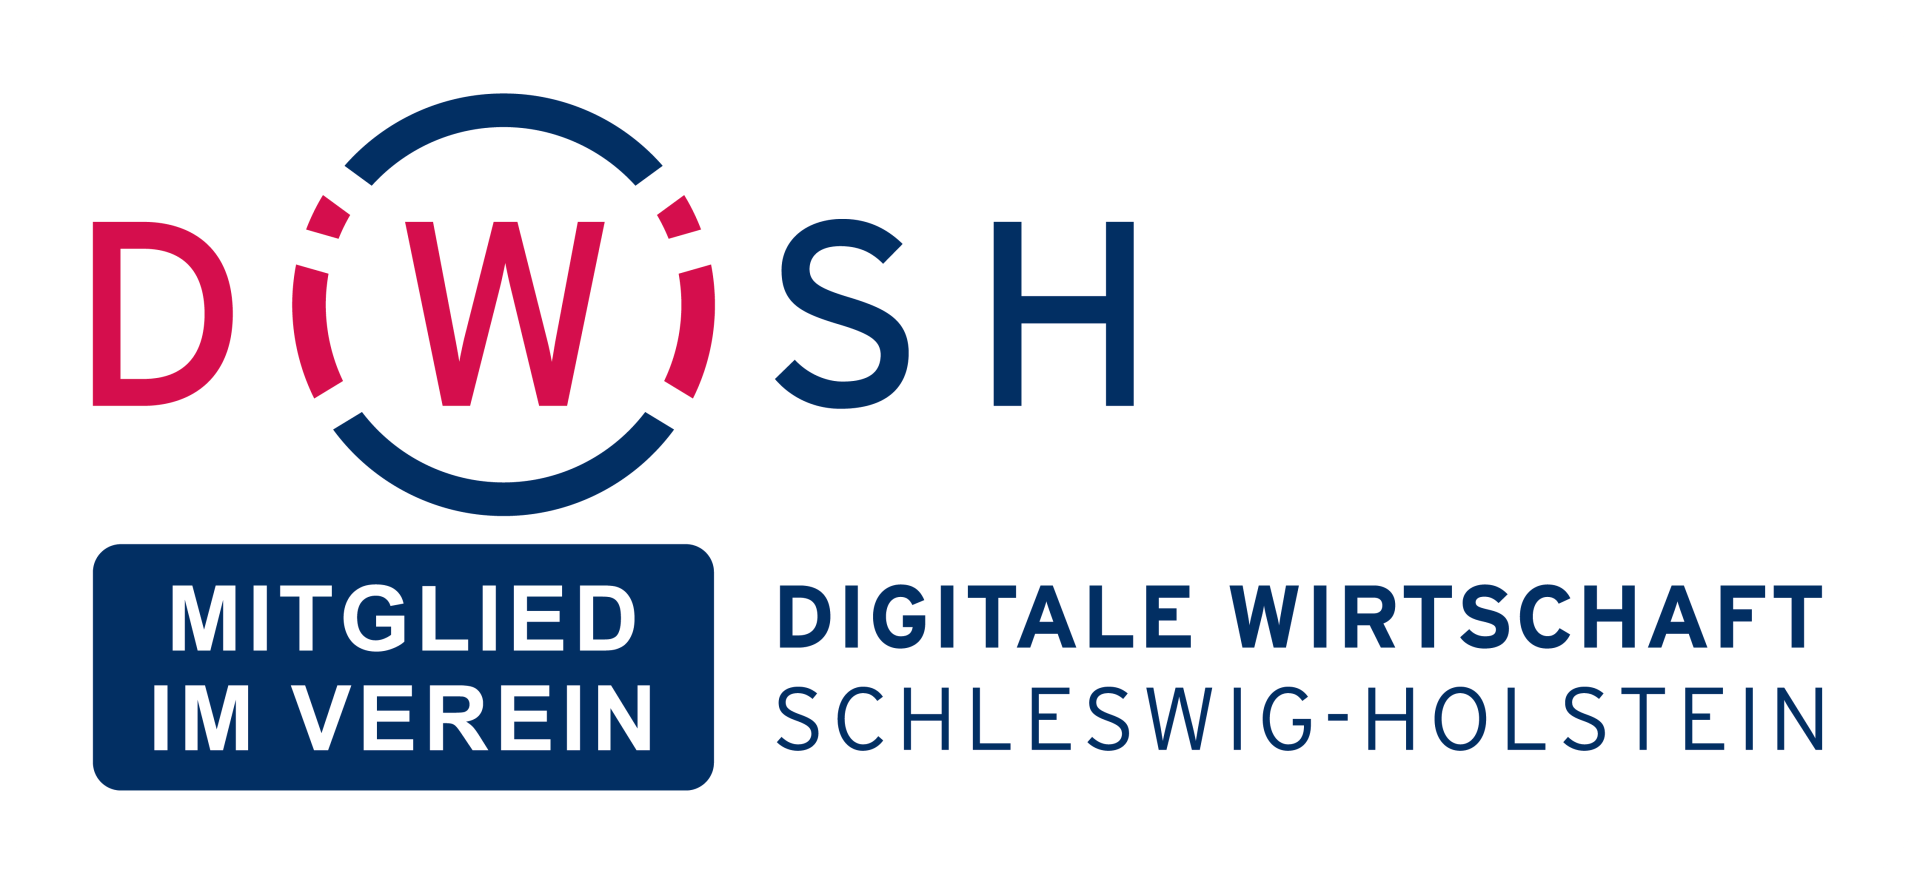 <img src=”Logo-DiWiSH.png” alt=”Logo-Digitale-Wirtschaft-Schleswig-Holstein”>